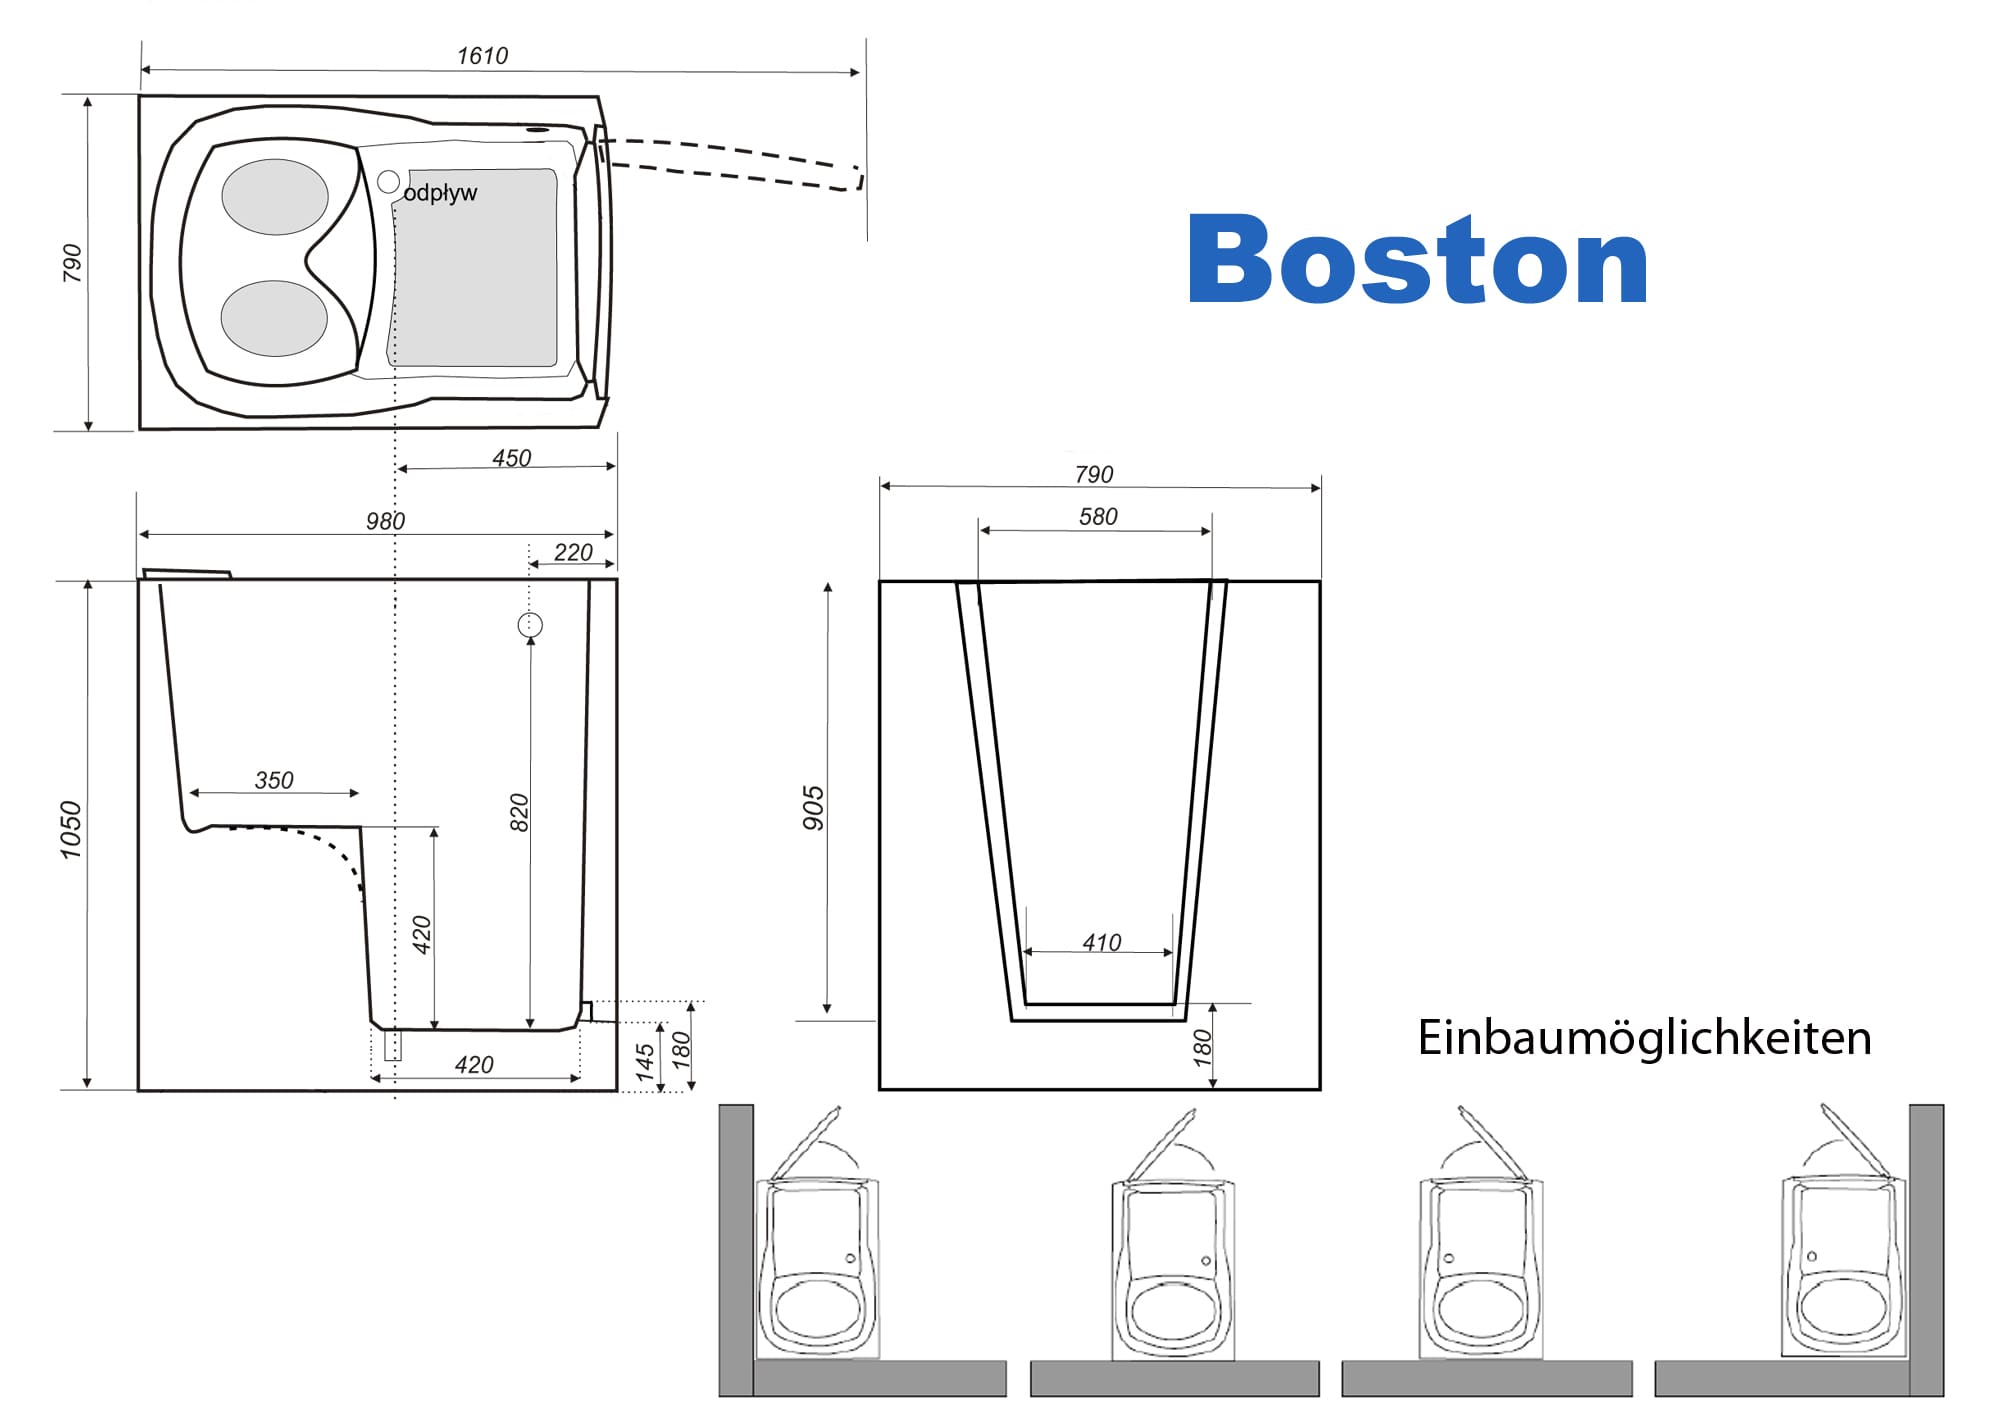 Badewanne mit Tür Einbaubeschreibung Boston